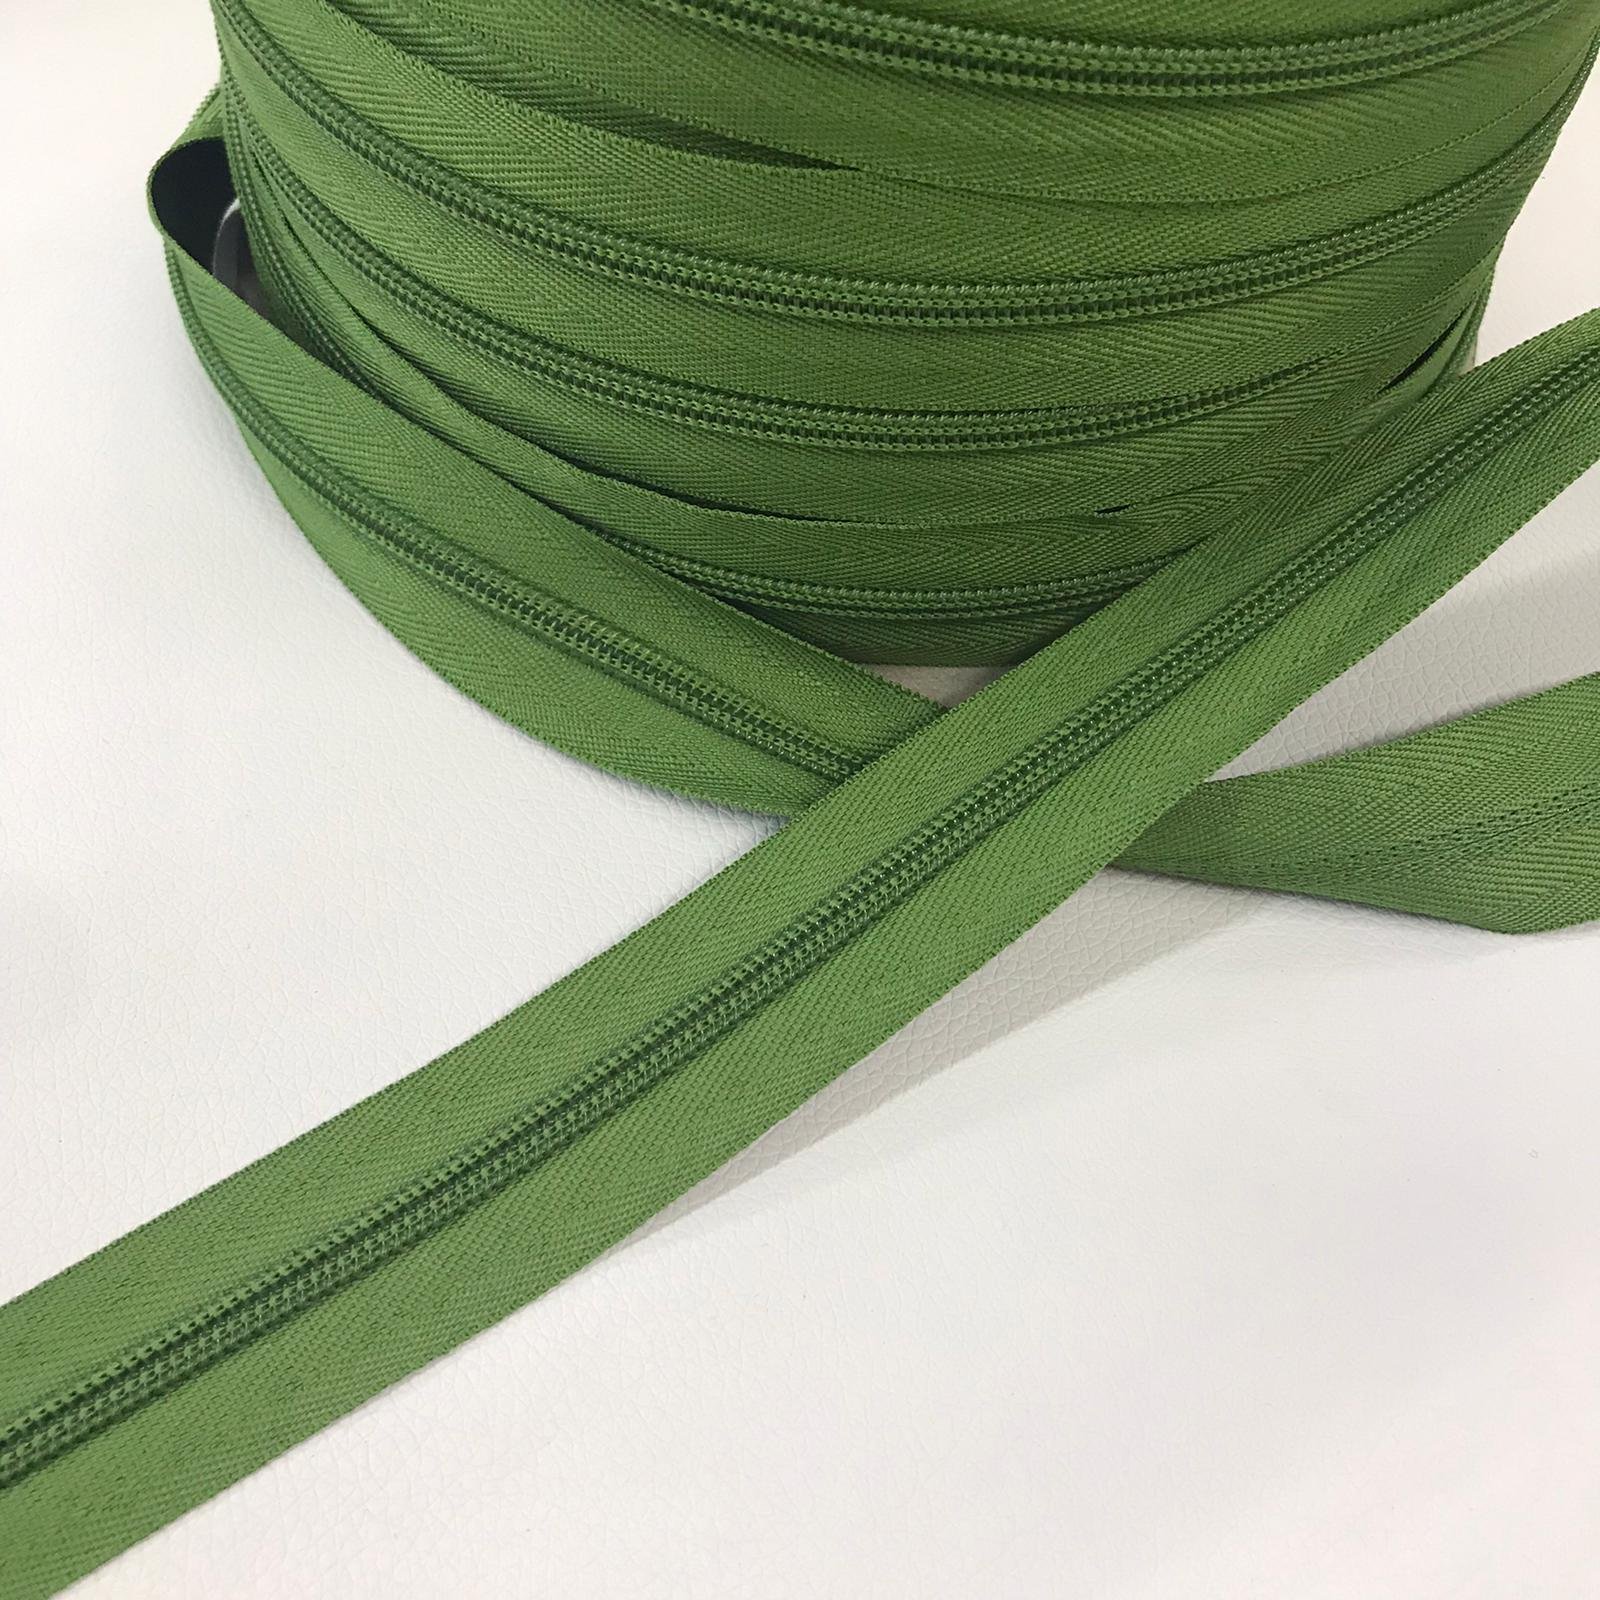 Telpes telas - Cursor cremallera 5mm verde